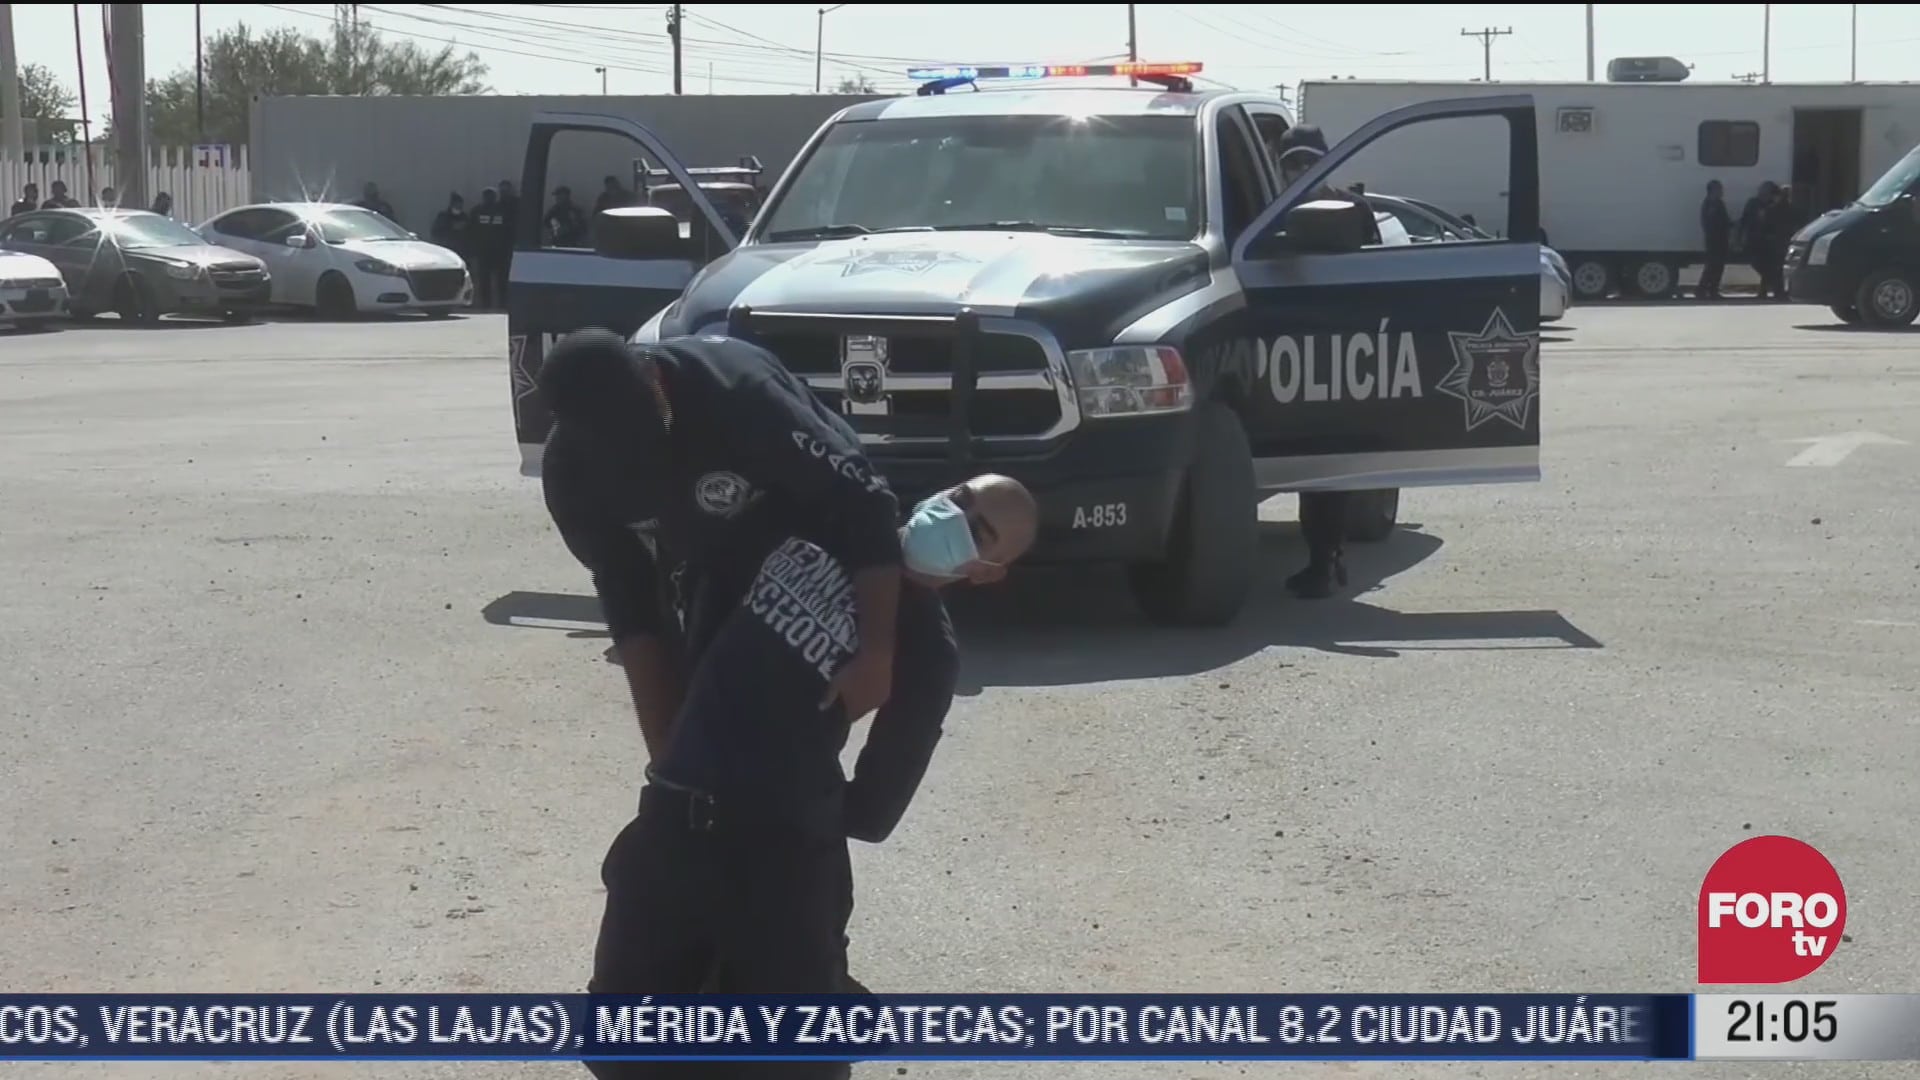 ciudad juarez busca a ciudadanos que quieran ganar 800 pesos diarios como policias